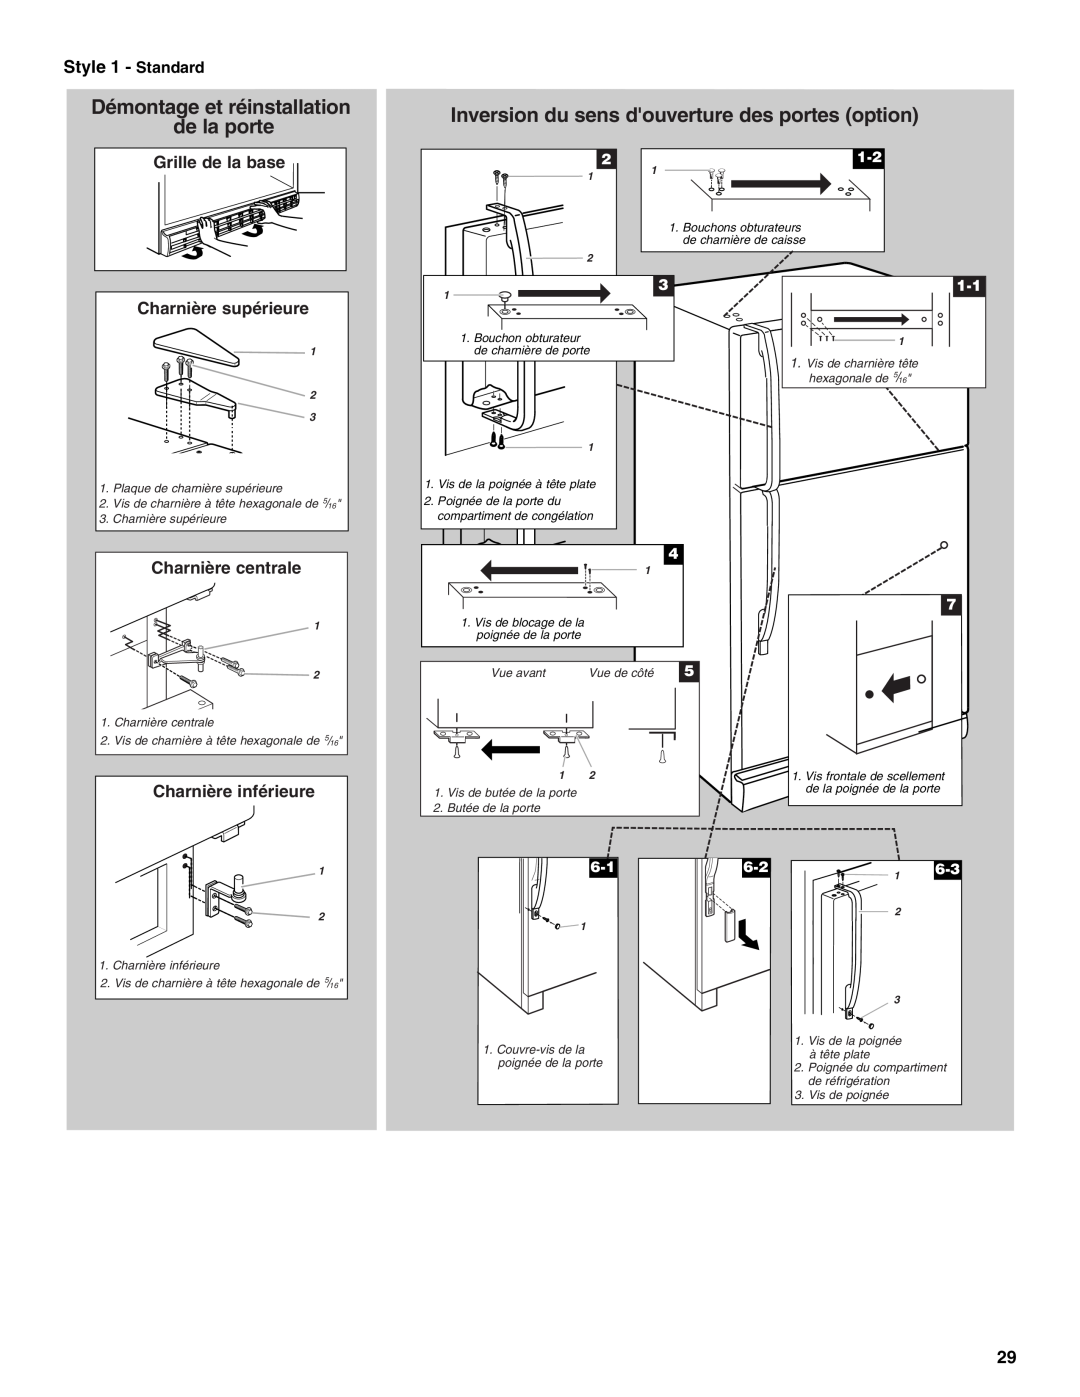 Whirlpool 2212539 manual Démontage et réinstallation de la porte, Inversion du sens douverture des portes option 